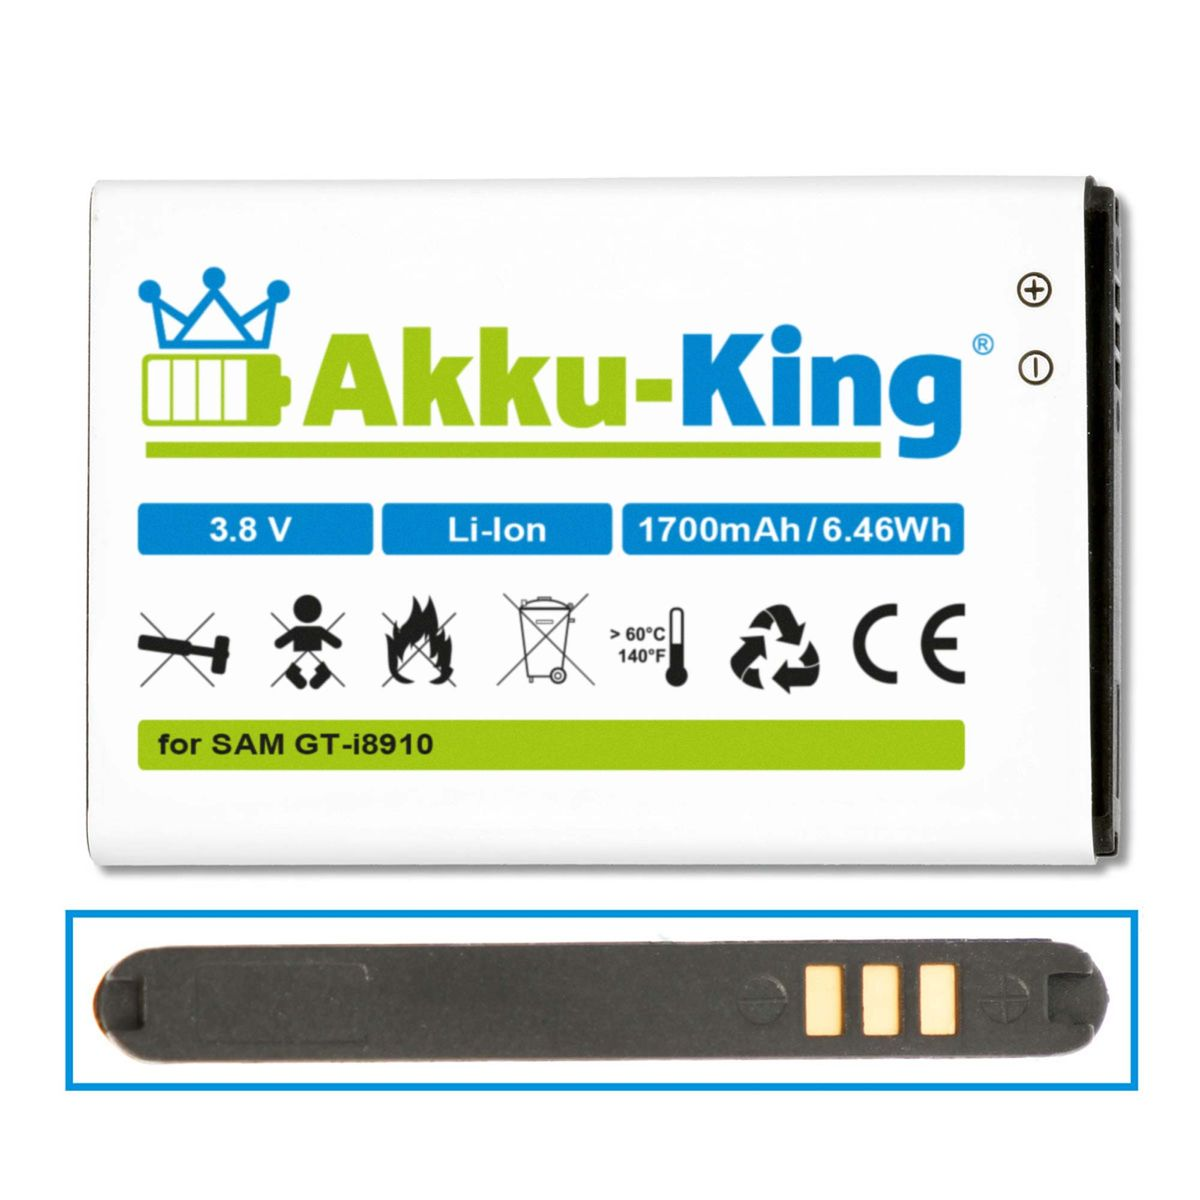 EB504465VUC Samsung AKKU-KING Volt, mit Li-Ion 3.8 kompatibel Akku Handy-Akku, 1700mAh